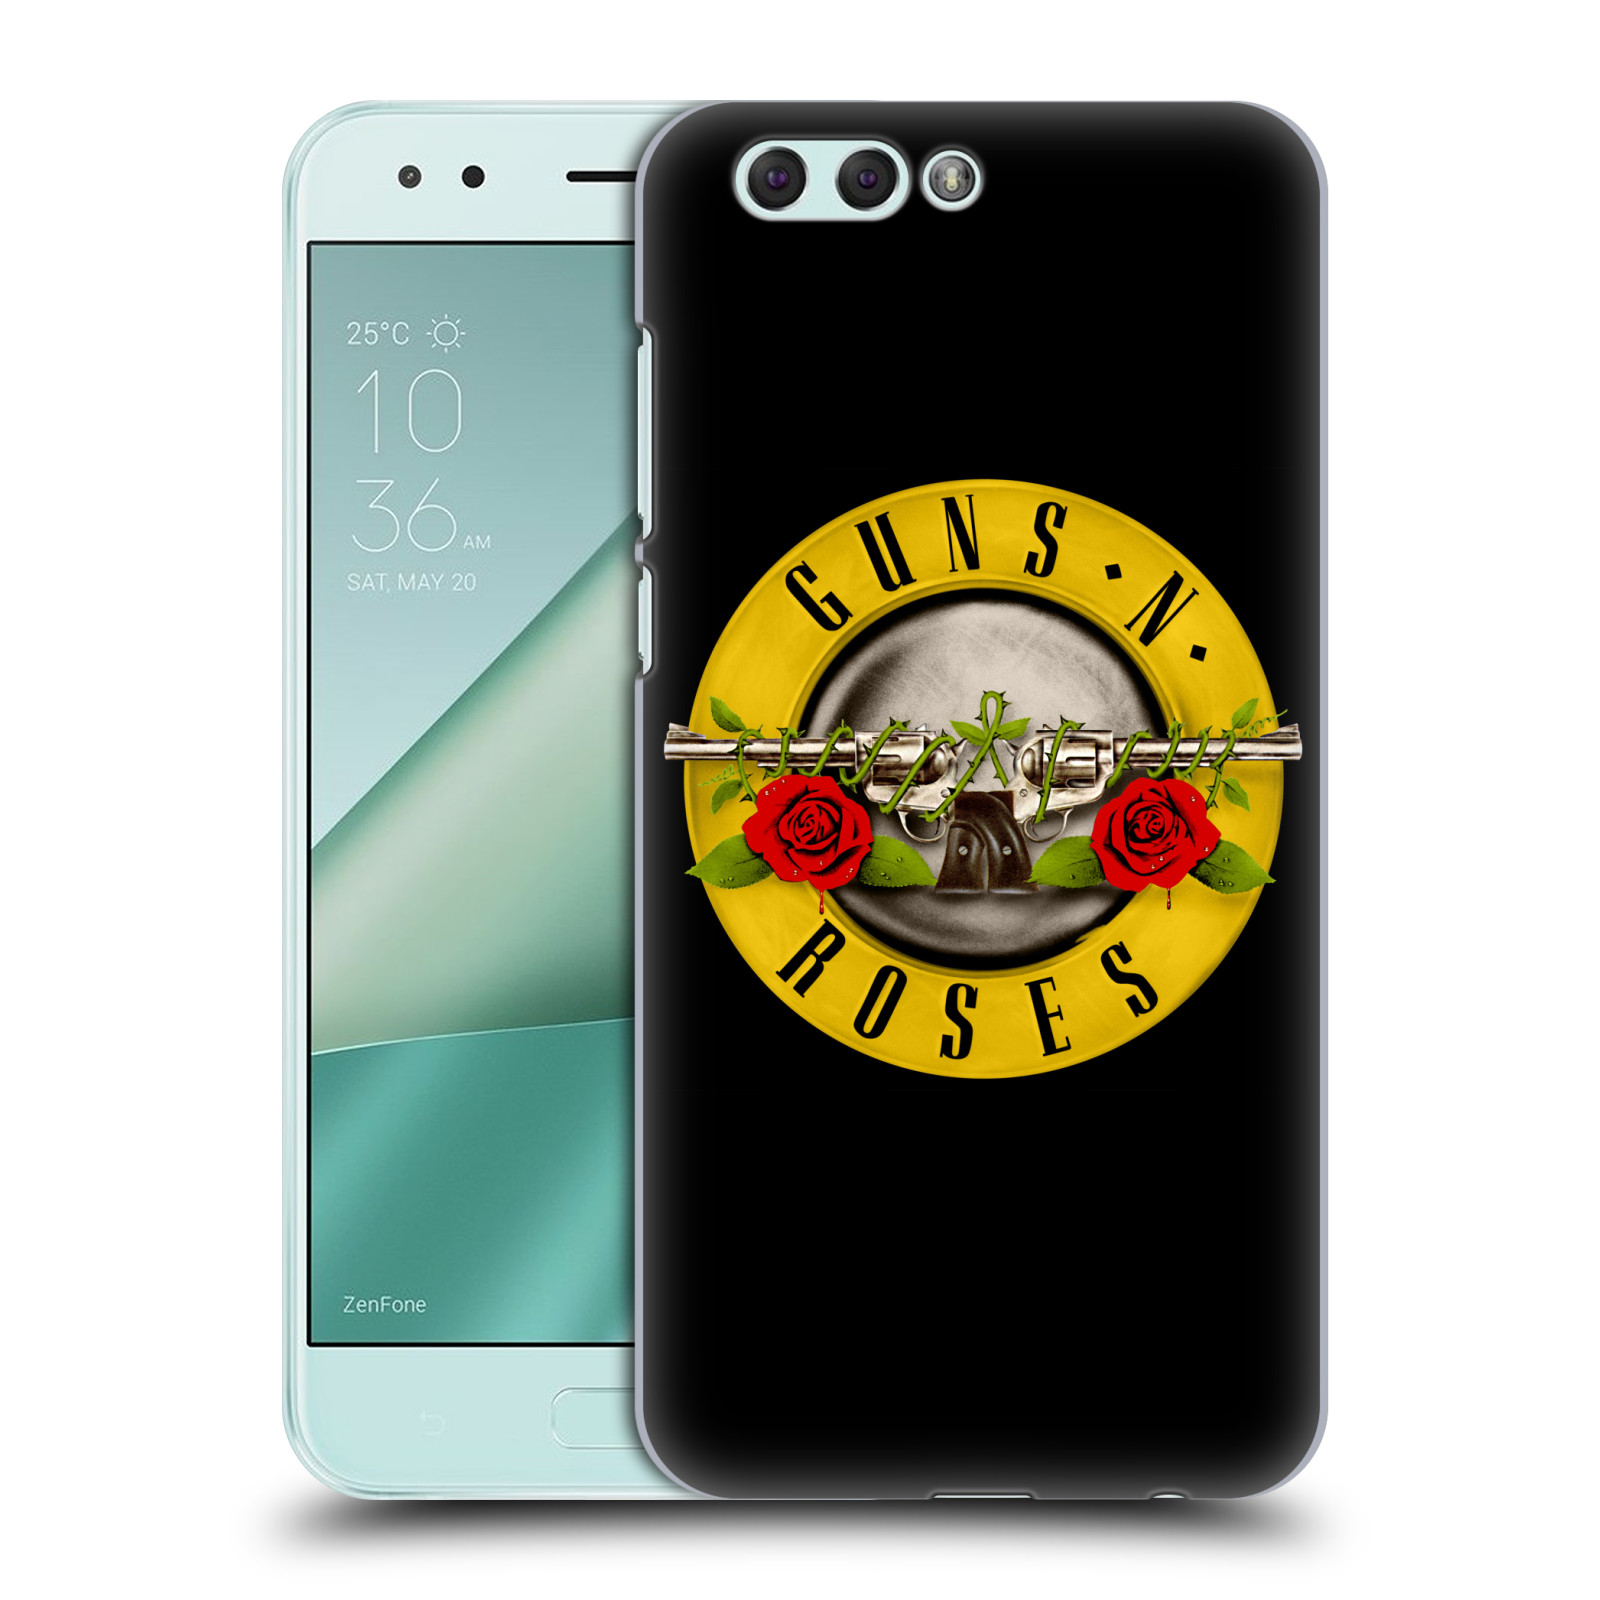 HEAD CASE plastový obal na mobil Asus Zenfone 4 ZE554KL hudební skupina Guns N Roses